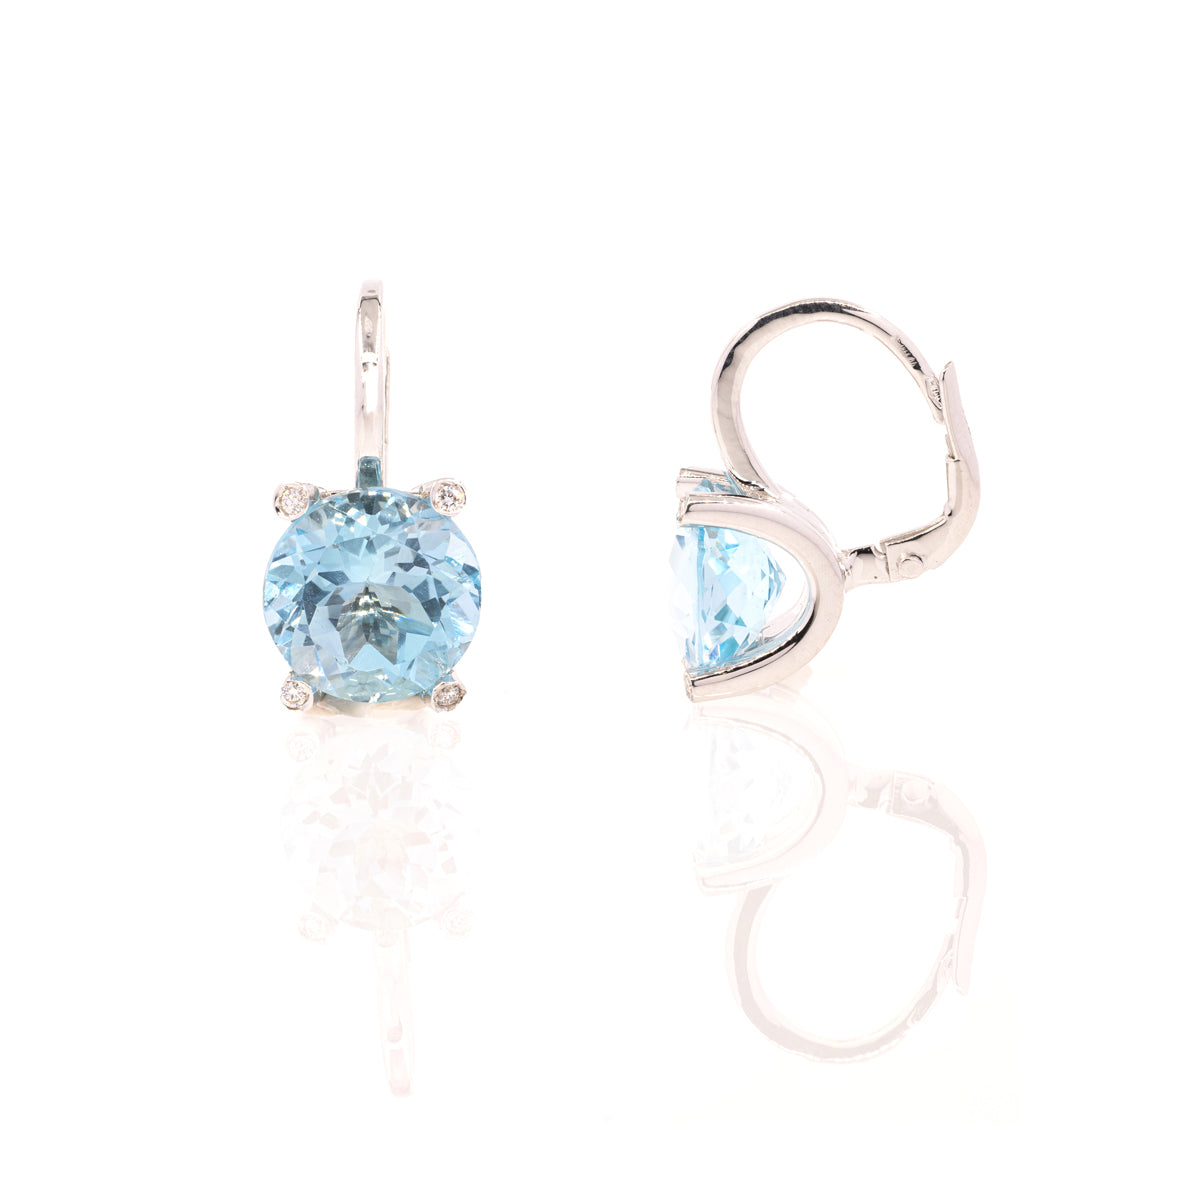 Diana 404 blue topaz earrings